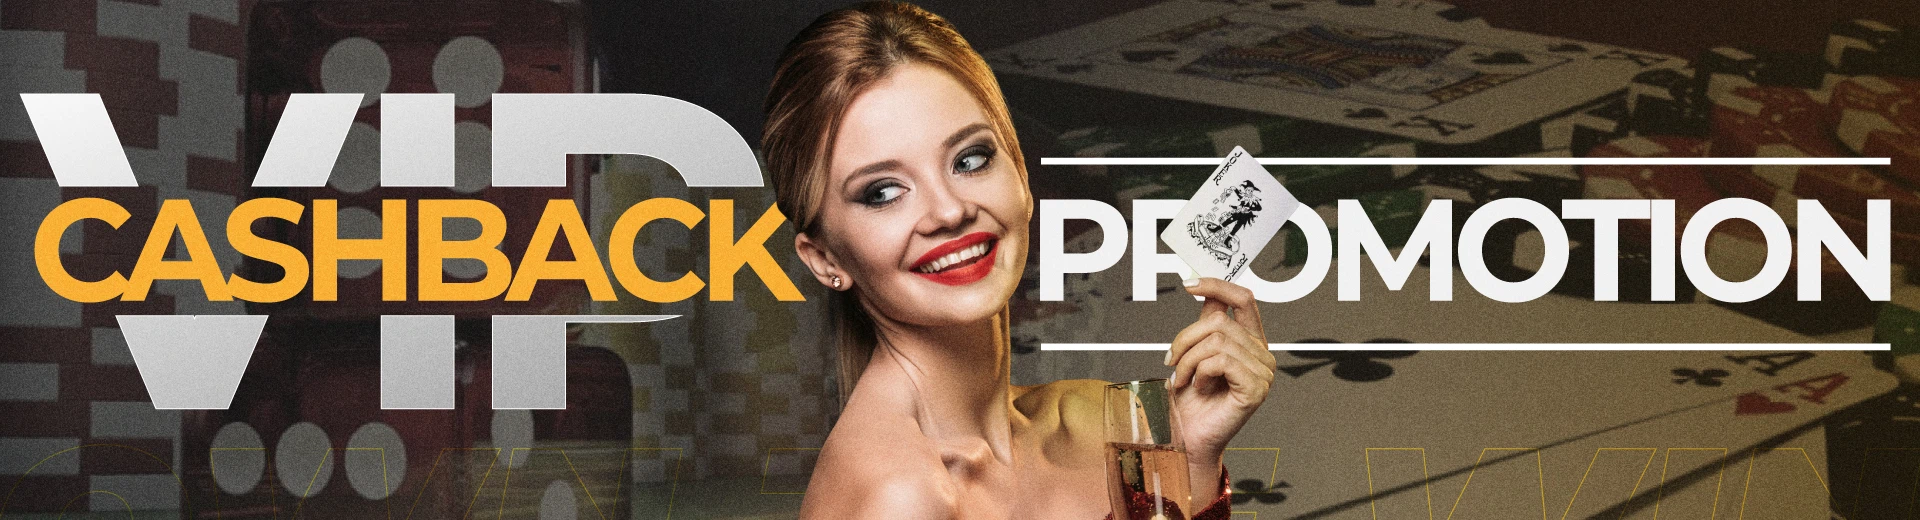 VIP Cashback Guide in OKBET Online Casino - OKBET promotions